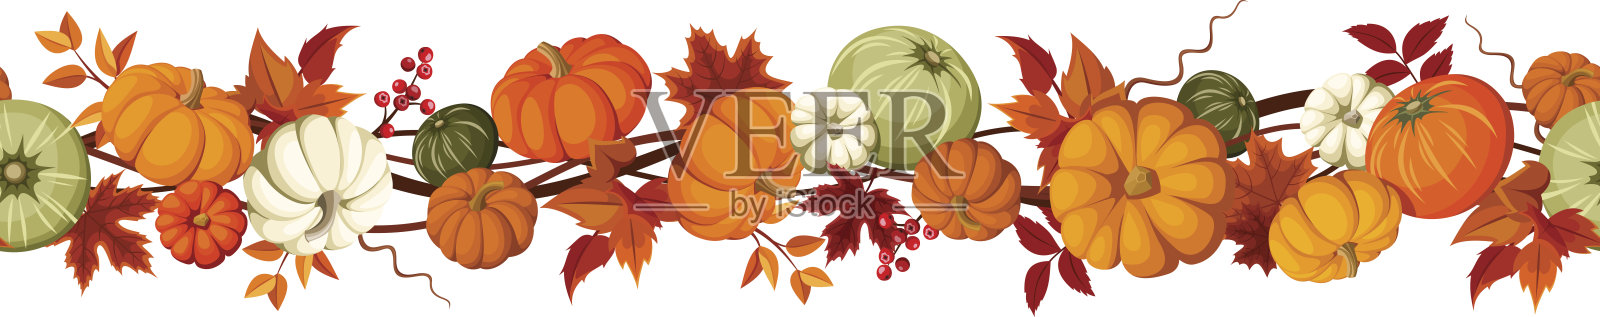 水平无缝背景南瓜和秋天的叶子。矢量插图。设计元素图片